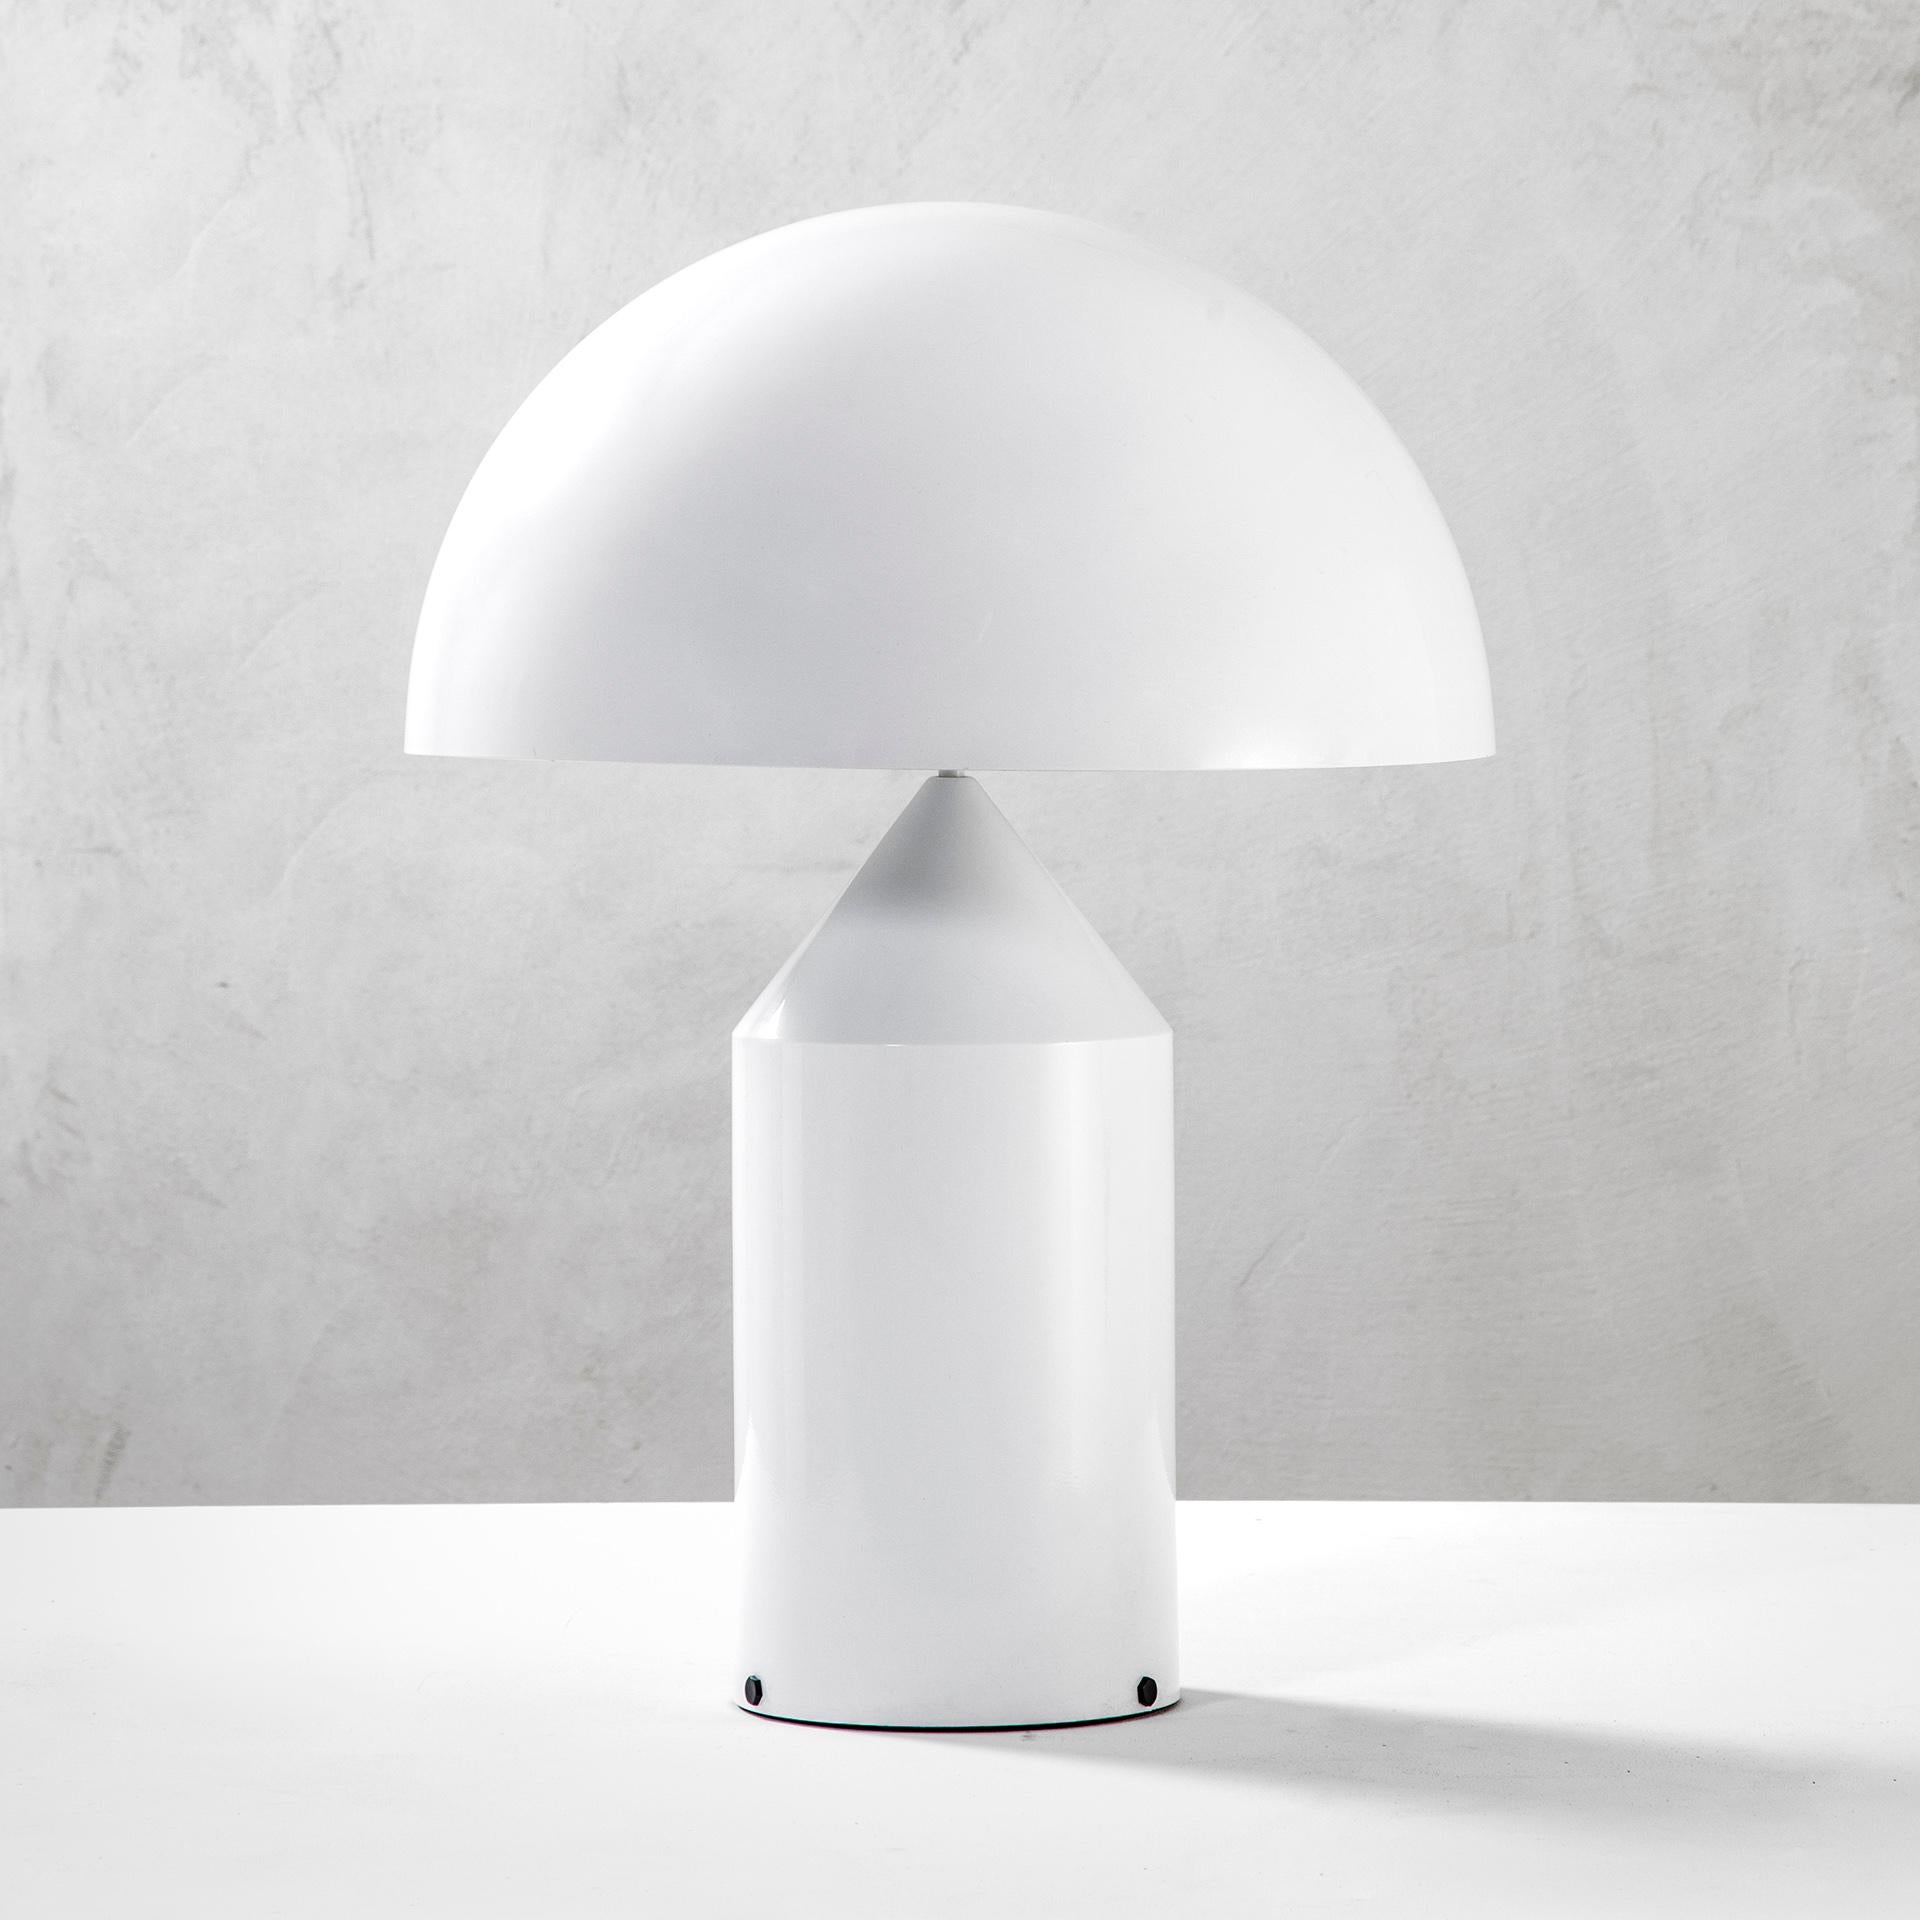 Atollo, depuis de nombreuses années, n'est plus une lampe, ou plutôt, ce n'est pas seulement une lampe.
C'est un mythe, une icône : l'un des symboles les plus acceptés dans le monde du design, l'un des rares produits que tout le monde reconnaît et